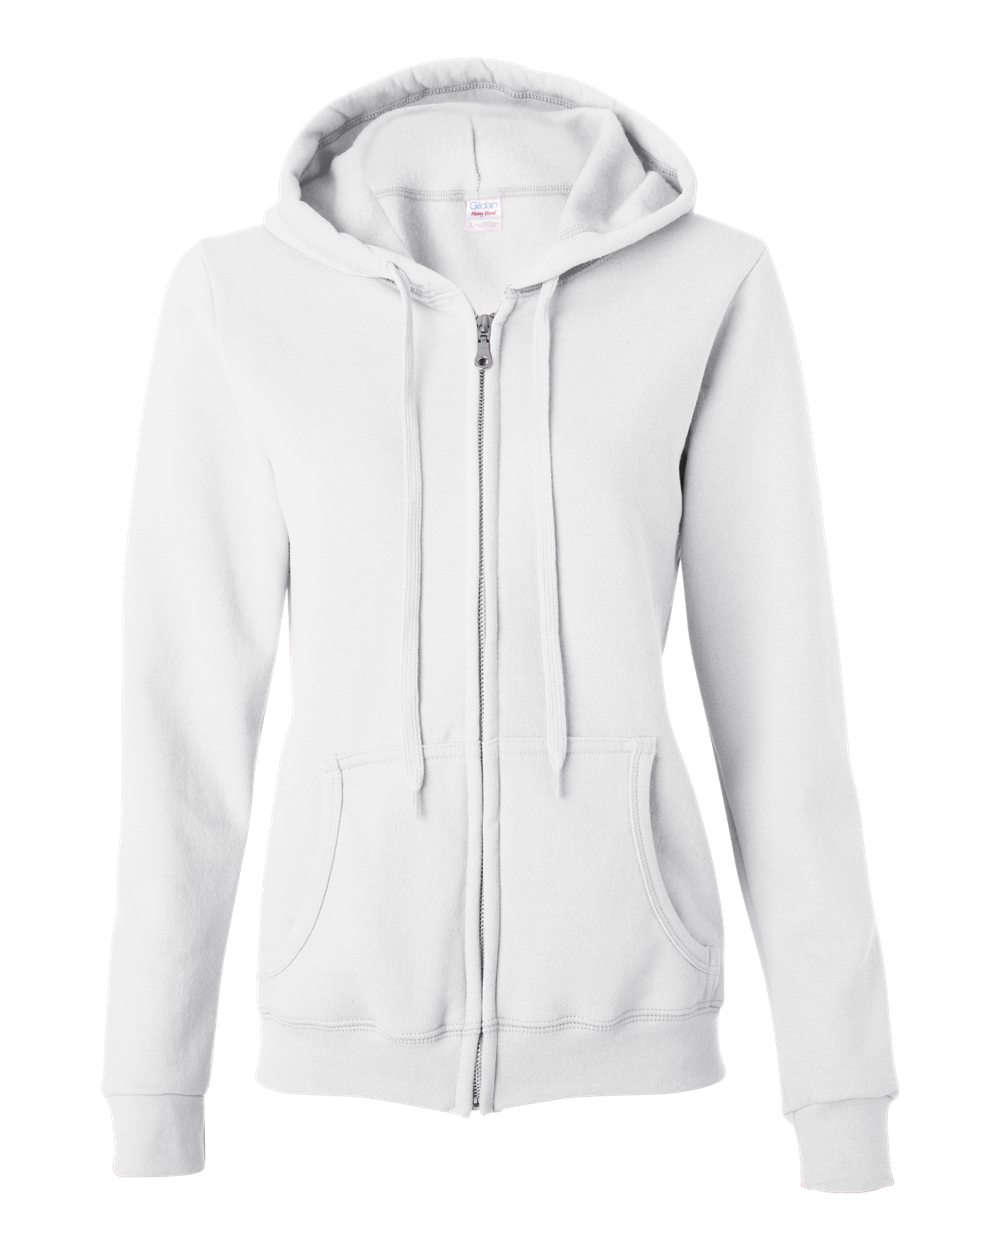 Heavy Blend™ Women’s Full-Zip Hooded Sweatshirt - 18600FL-